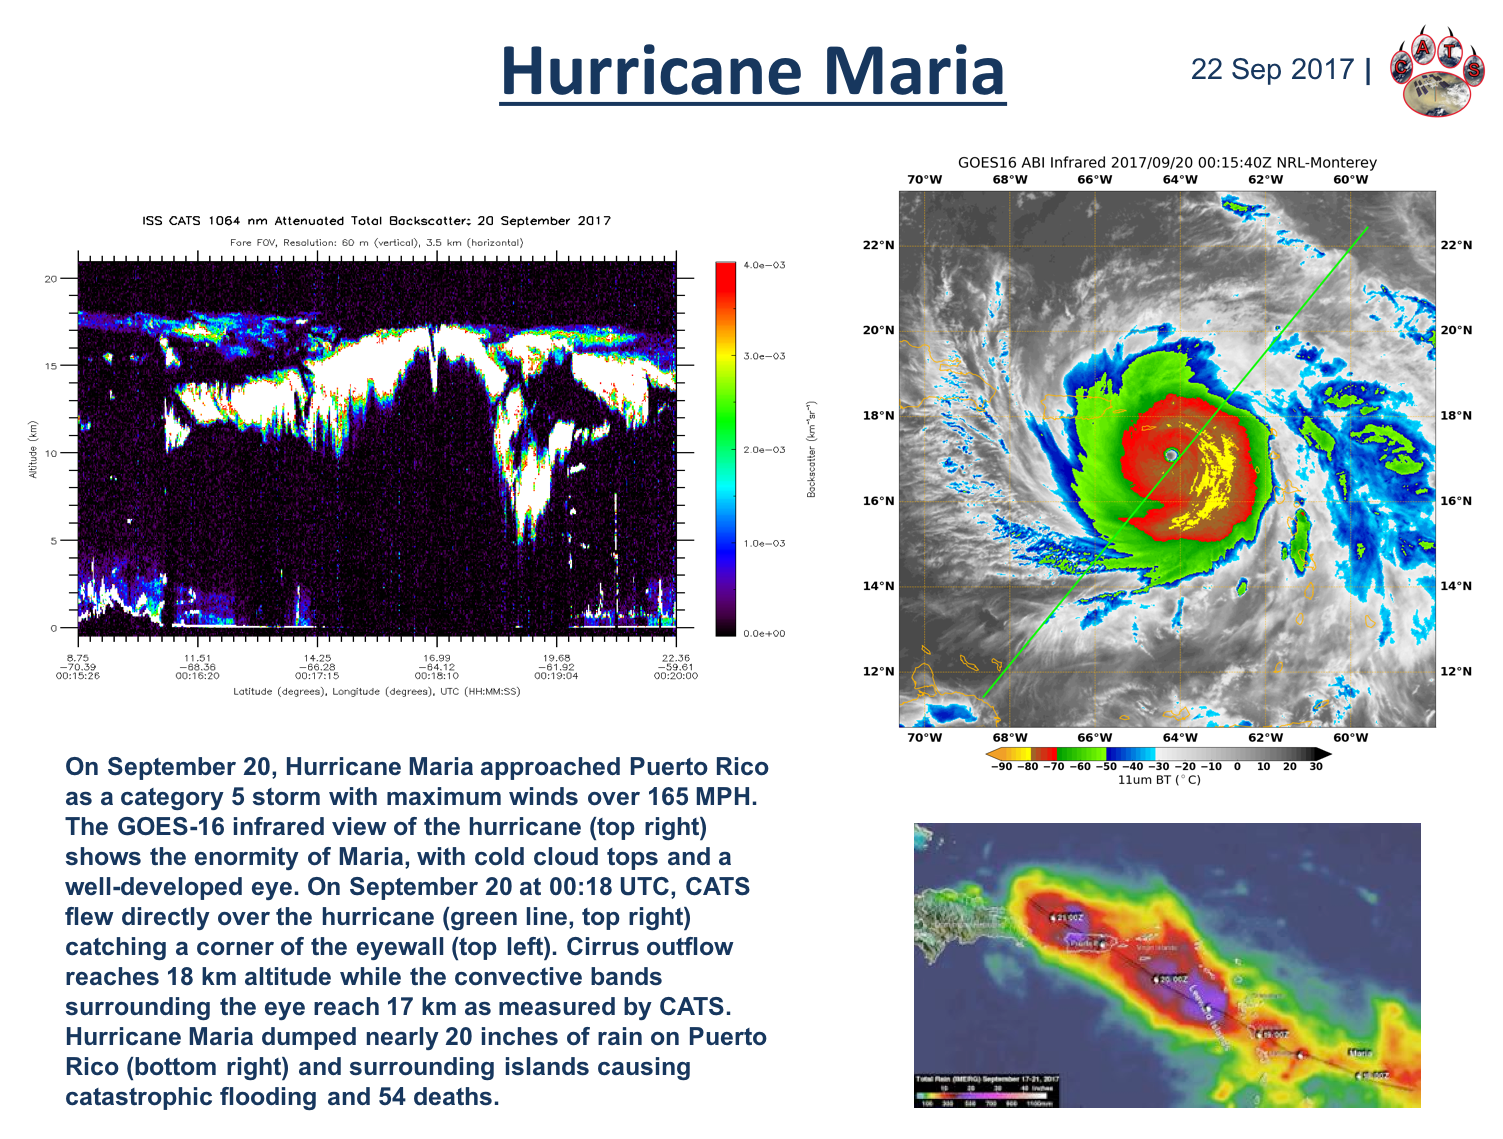 Hurricanes Maria